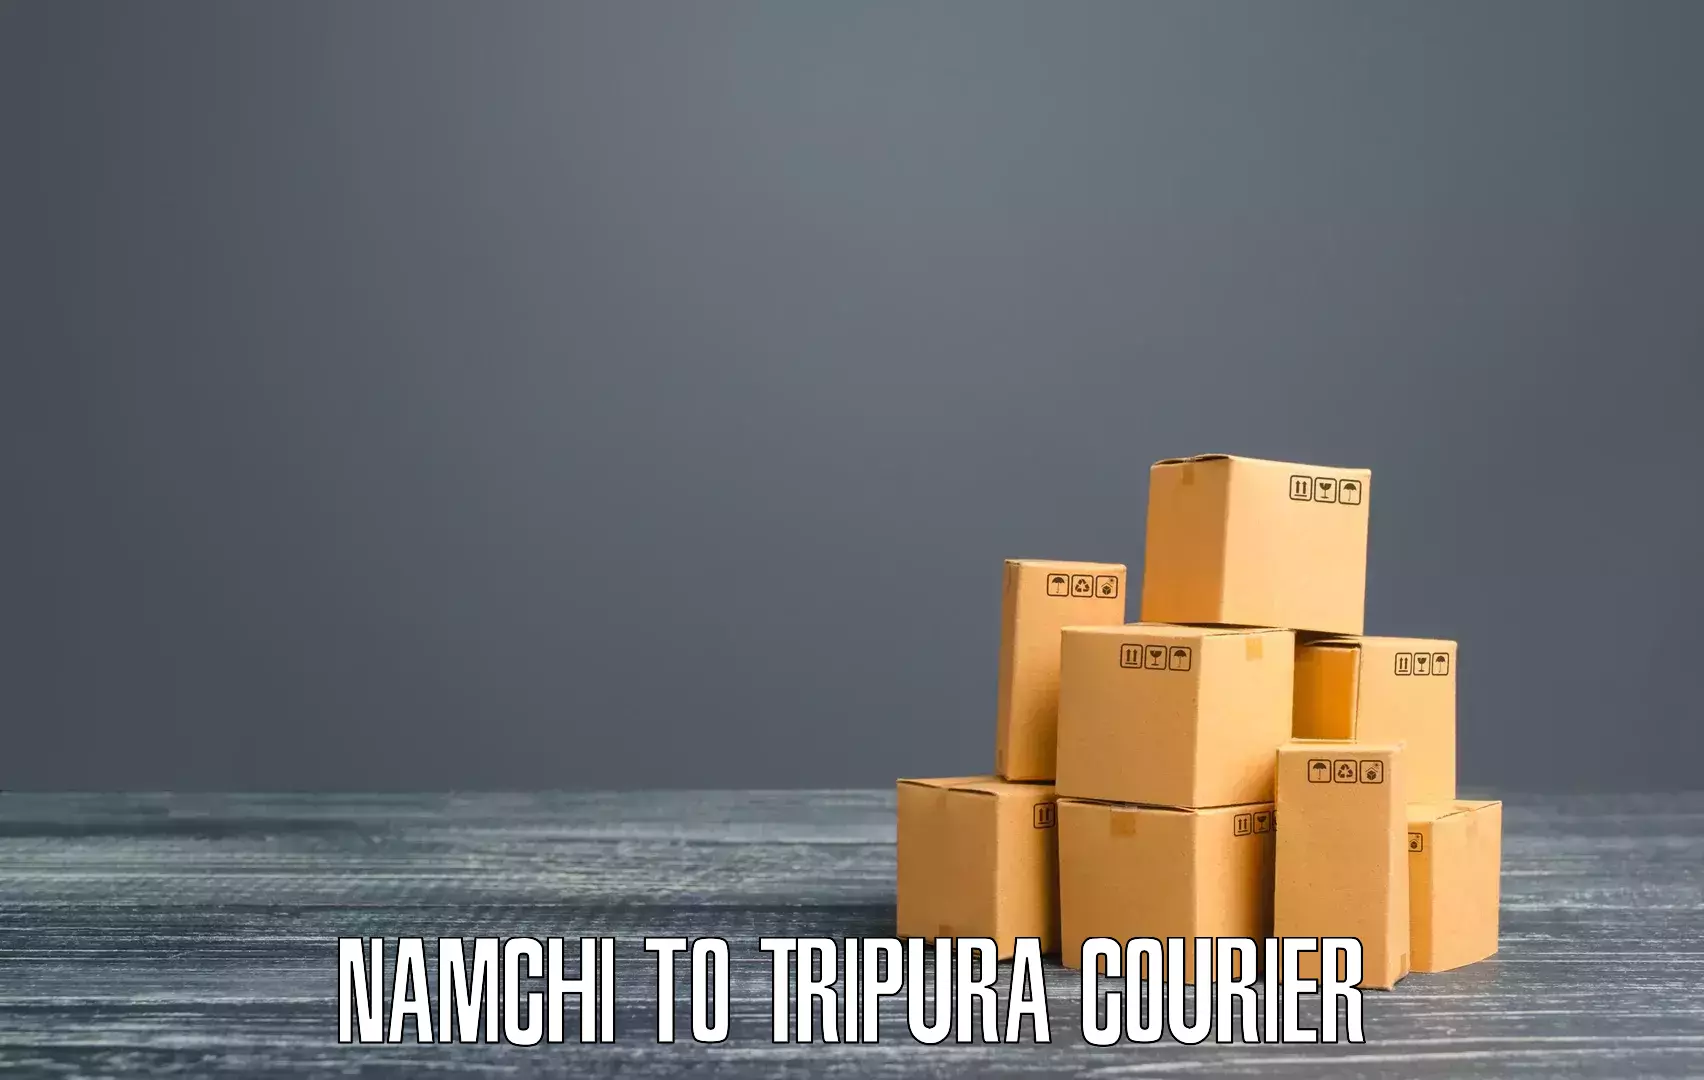 Global parcel delivery Namchi to Manu Bazar